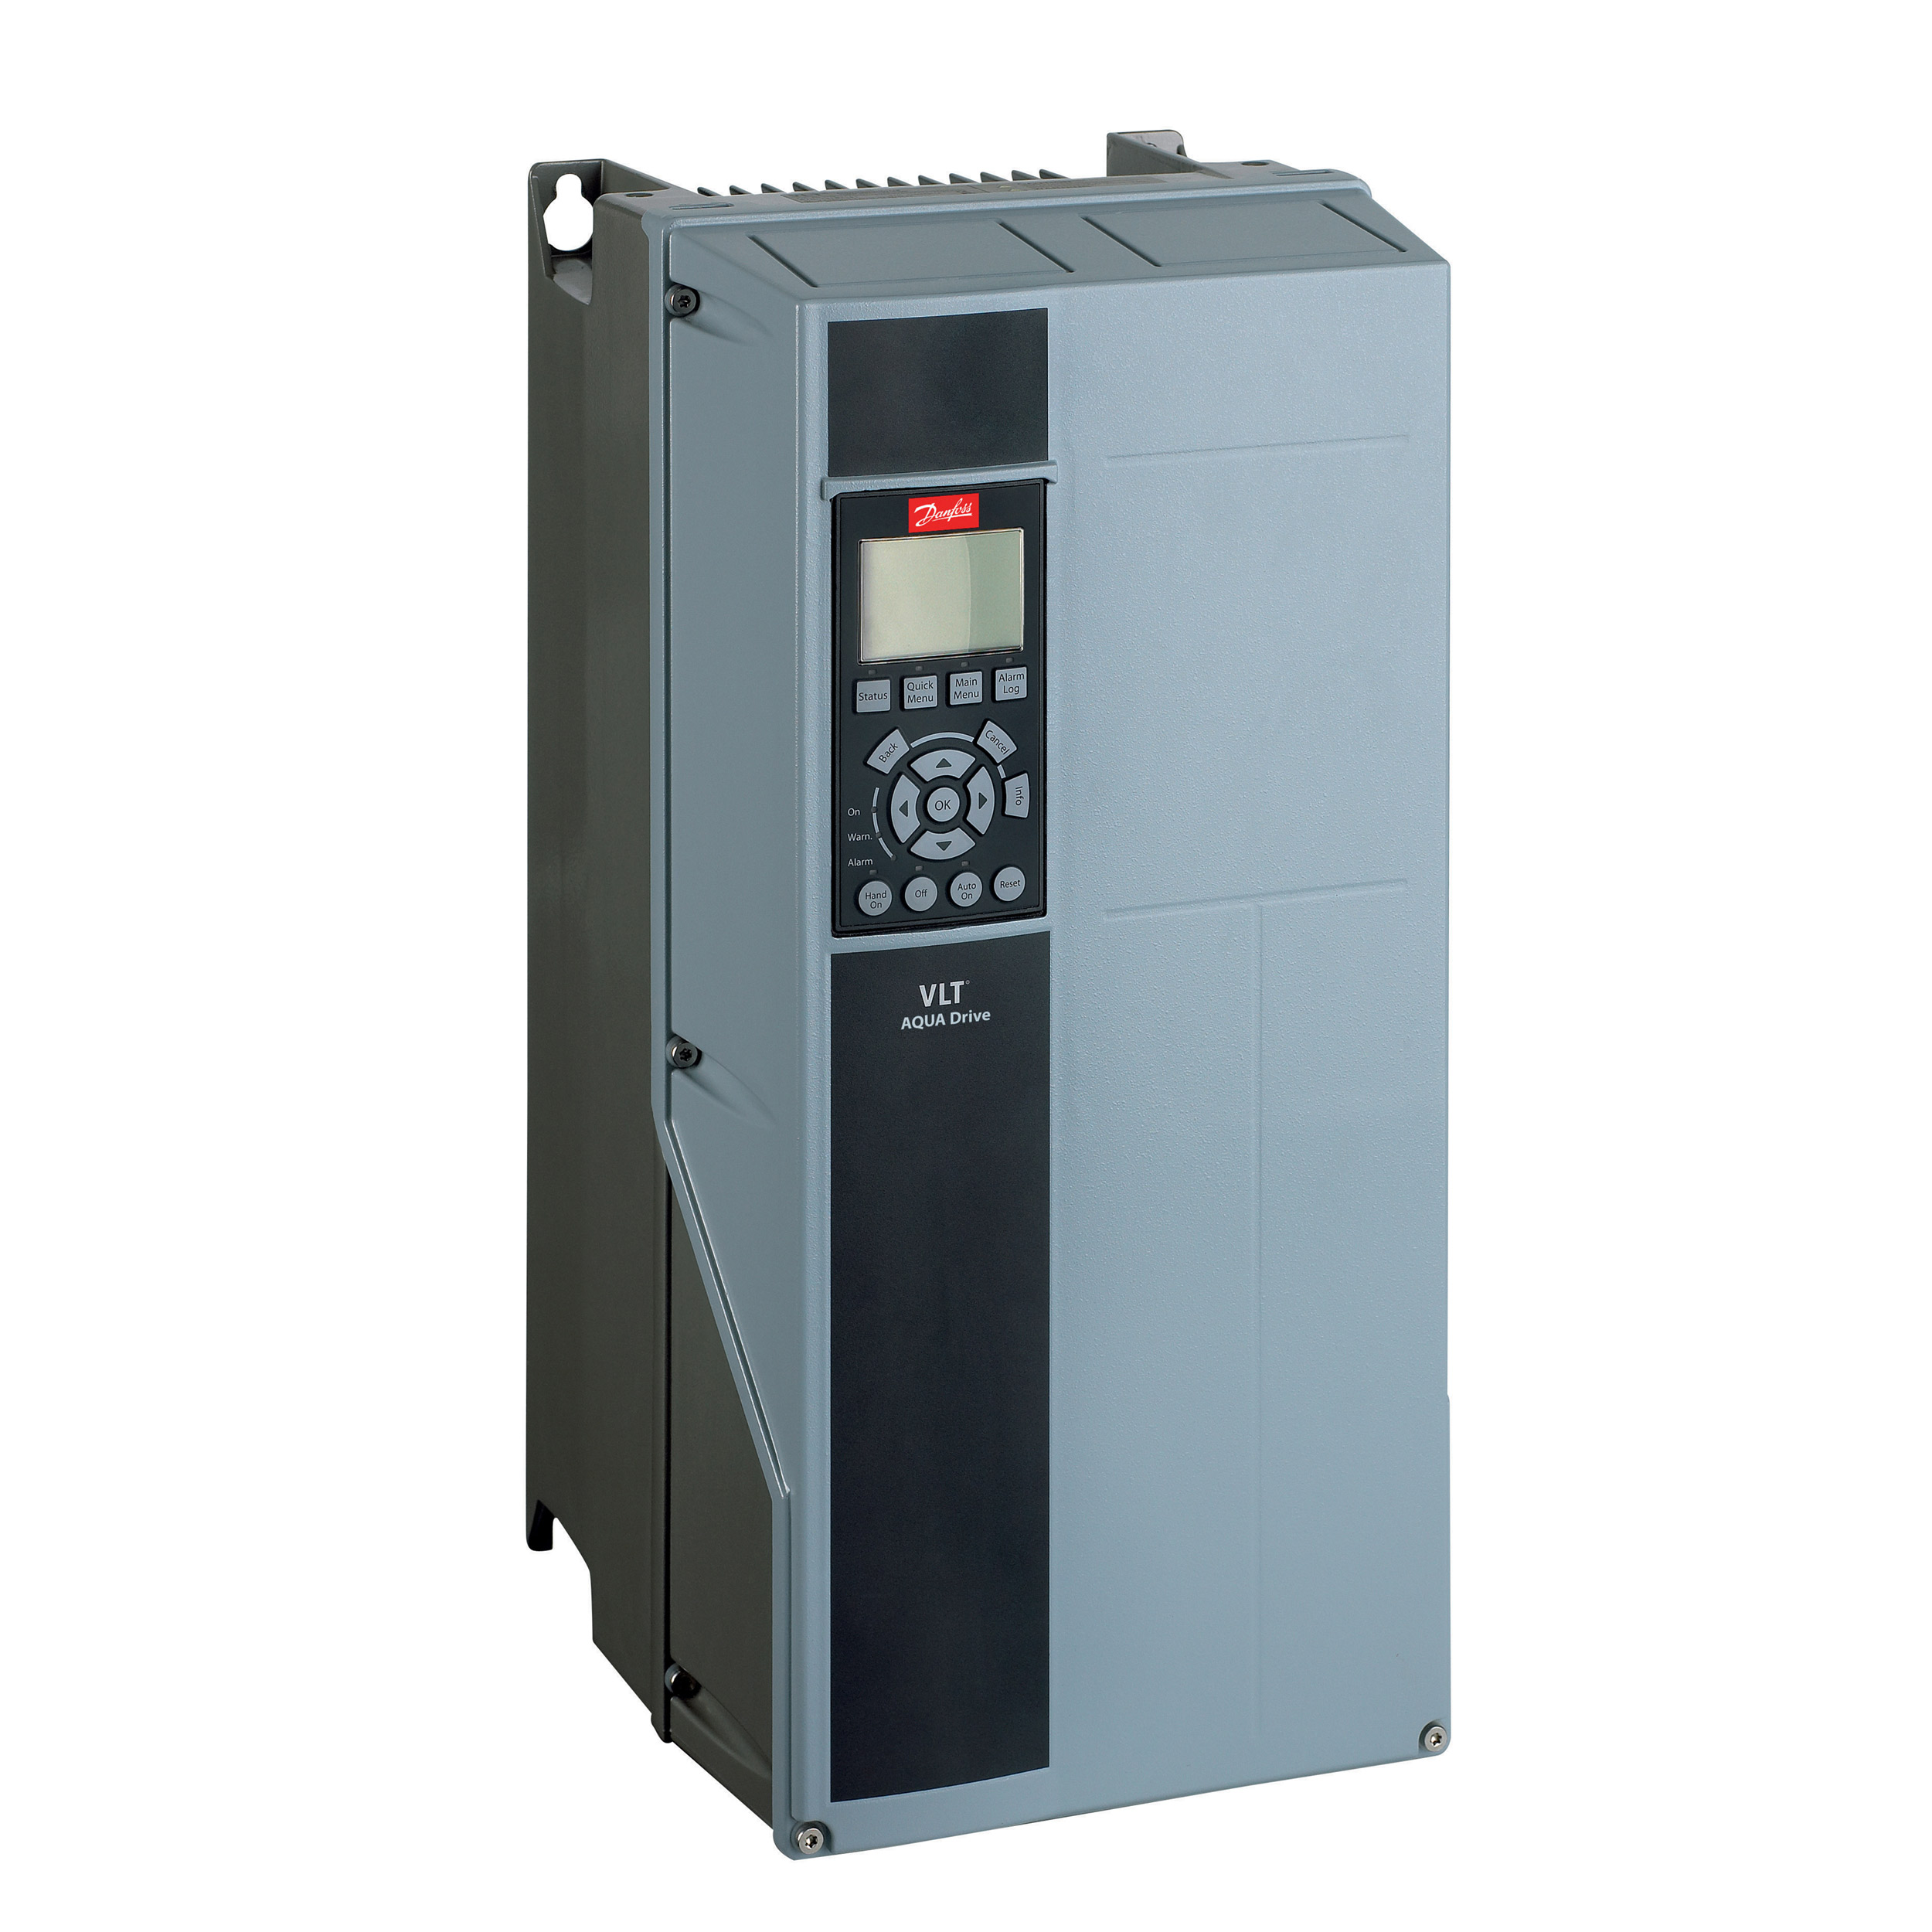 преобразователь частоты VLT Aqua Drive FC-202 315 кВт (134H8959) DANFOSS